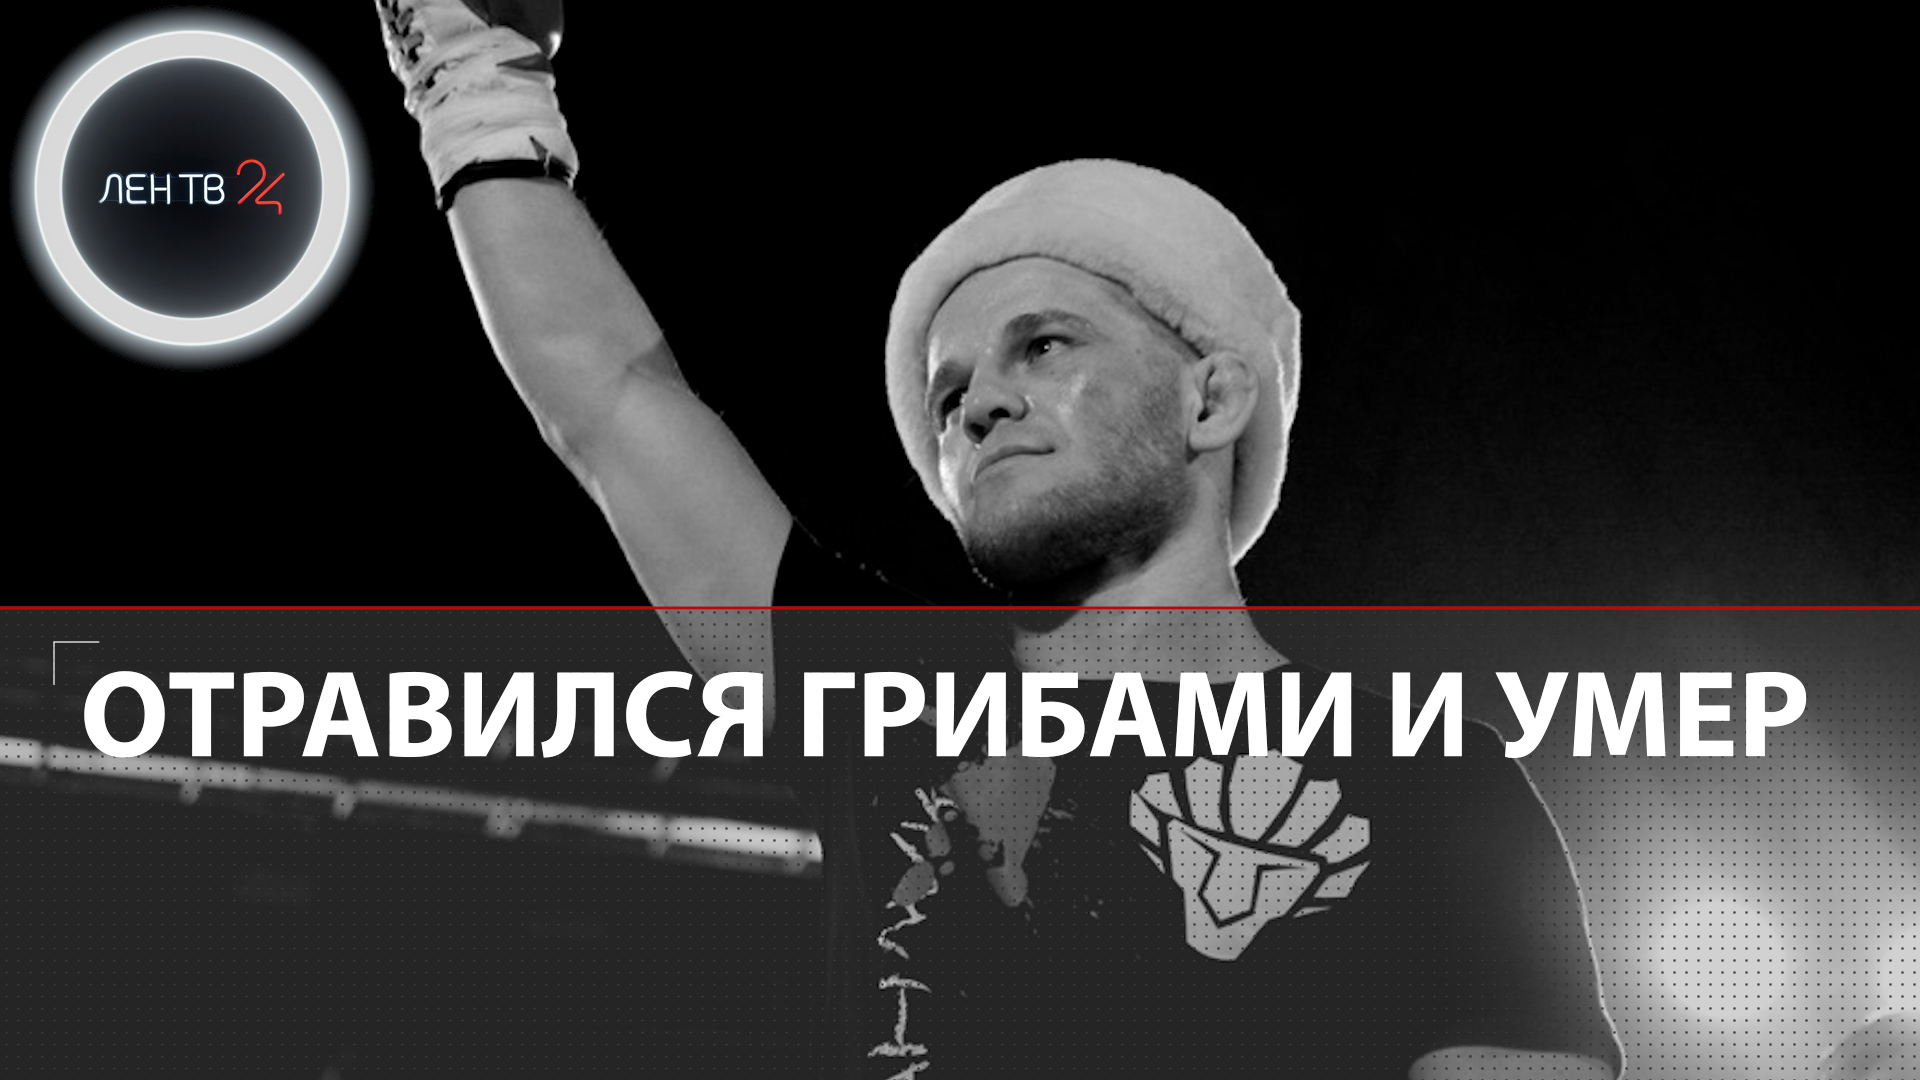 Боец MMA Александр Писарев умер, отравившись грибами или арбузом